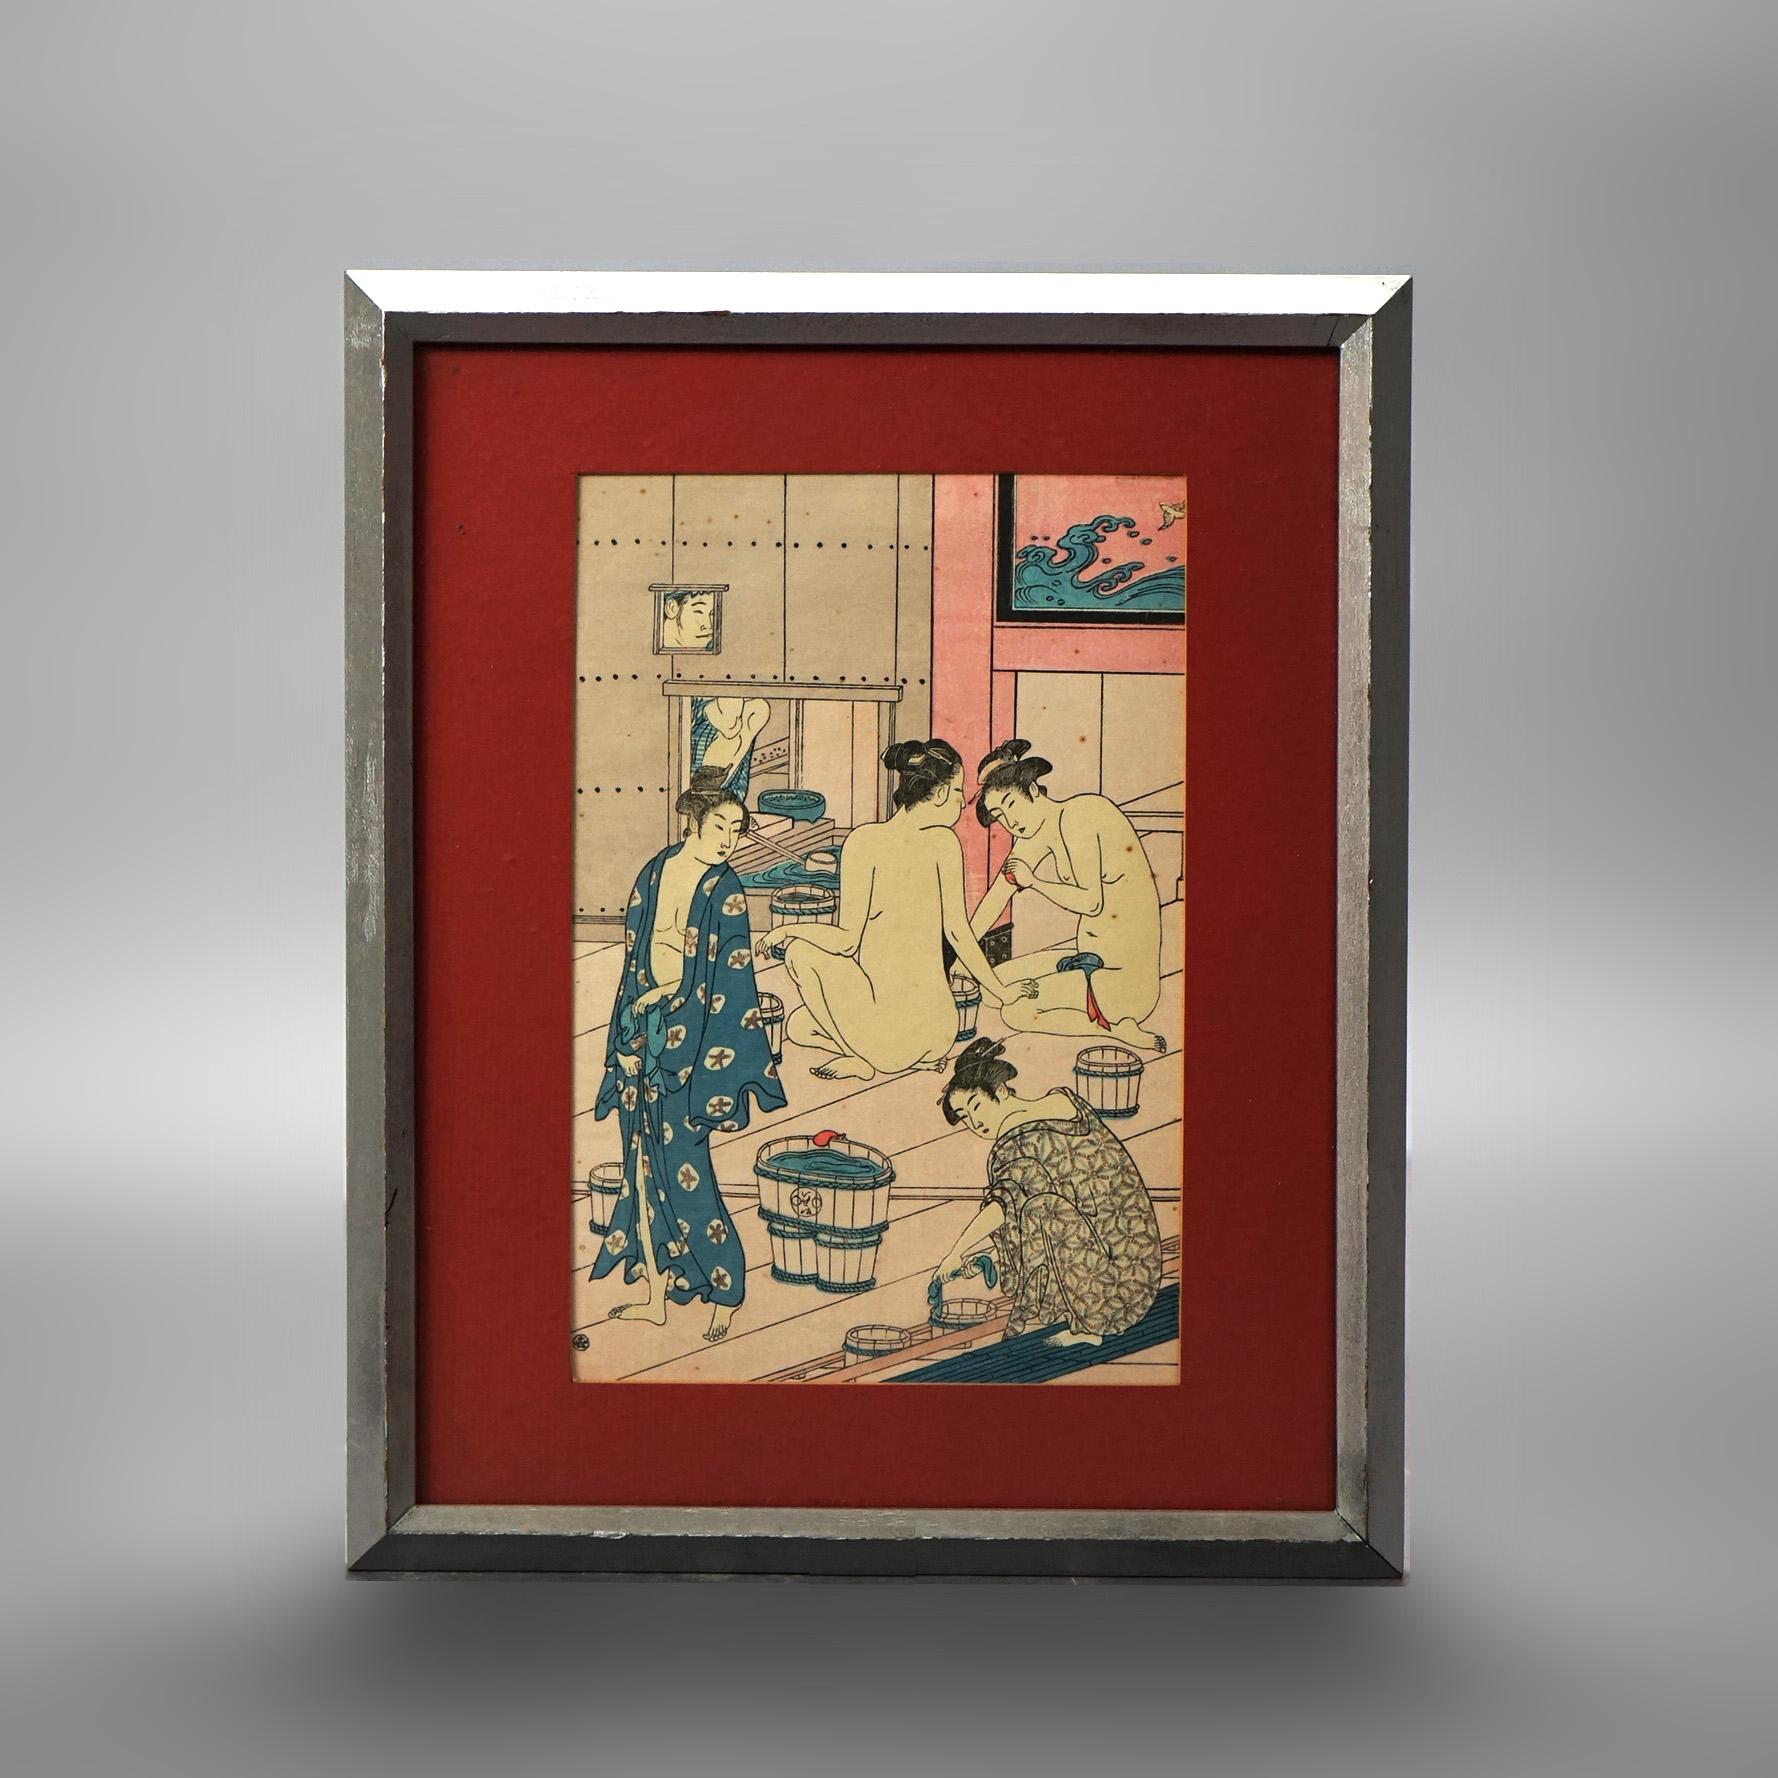 Drei japanische Genre-Holzschnitte von Torii Kiyonaga & Unbekannter Künstler, gerahmt,  20. Jahrhundert

Maße - Grüner Farbton: 14,25''H x 11,25''W x 1''D; Flöten-Szene: 17''H x 14''B x 1''T; Bad: 10,25''H x 8,75''B x 1''T